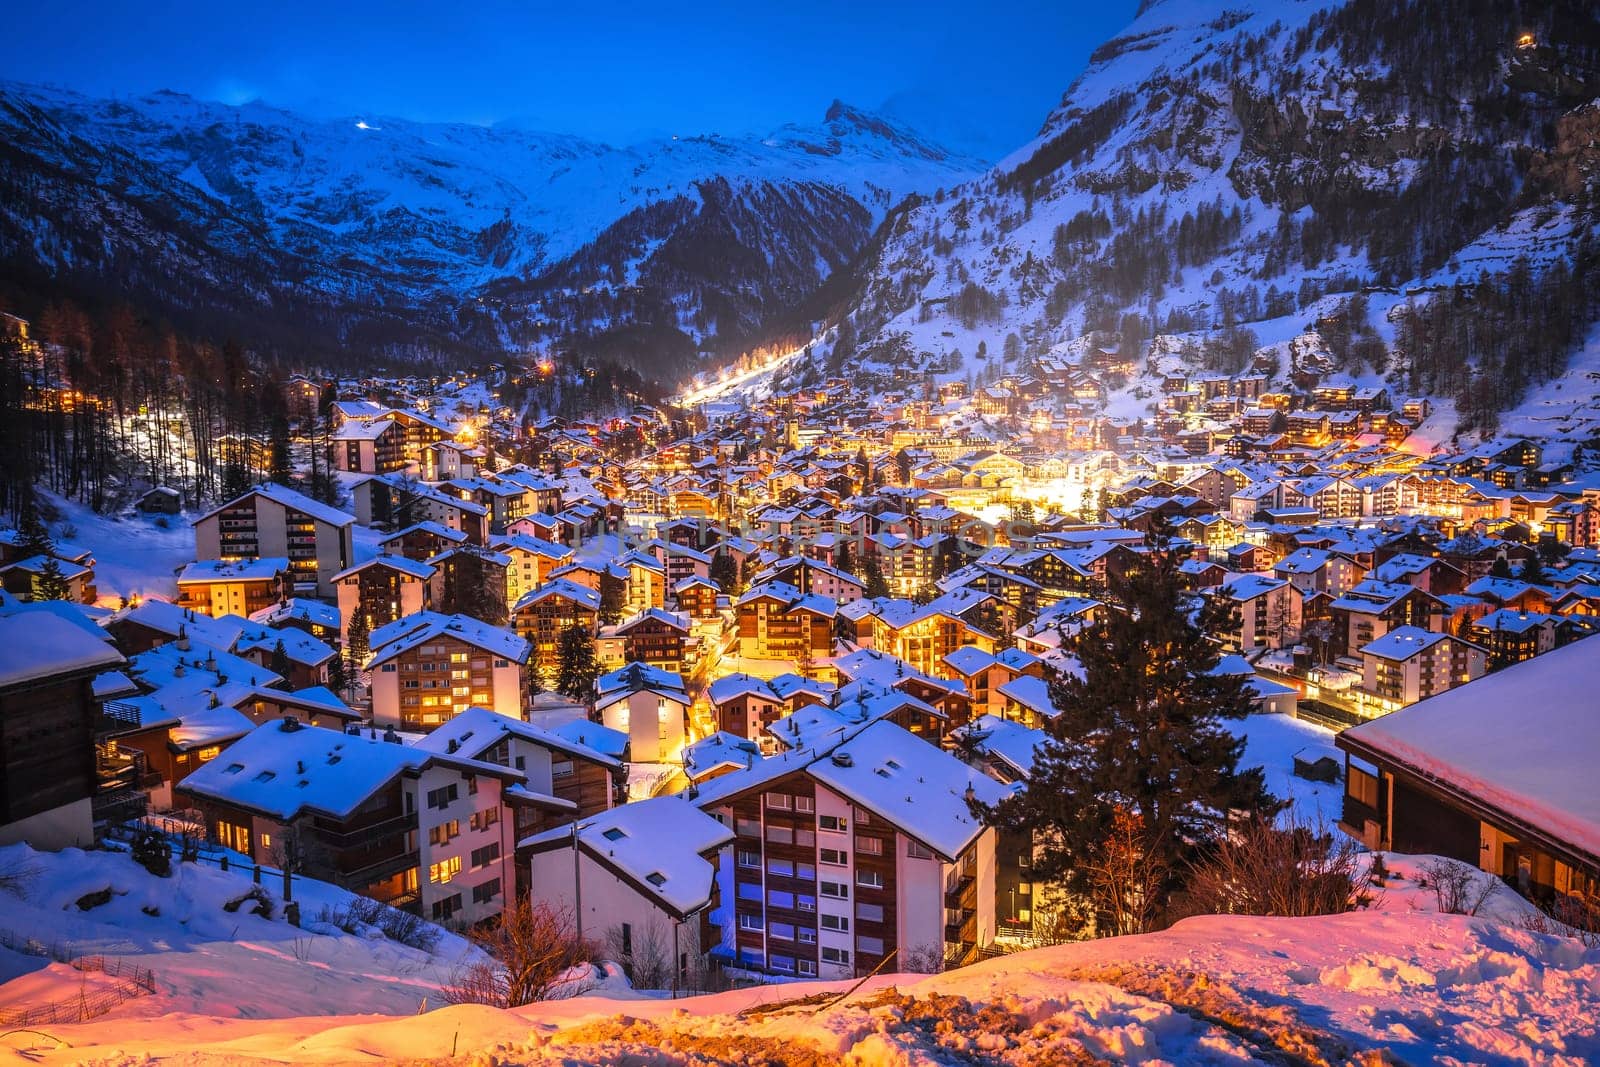 Idyllic village of Zermatt rooftops evening view, luxury winter destination by xbrchx